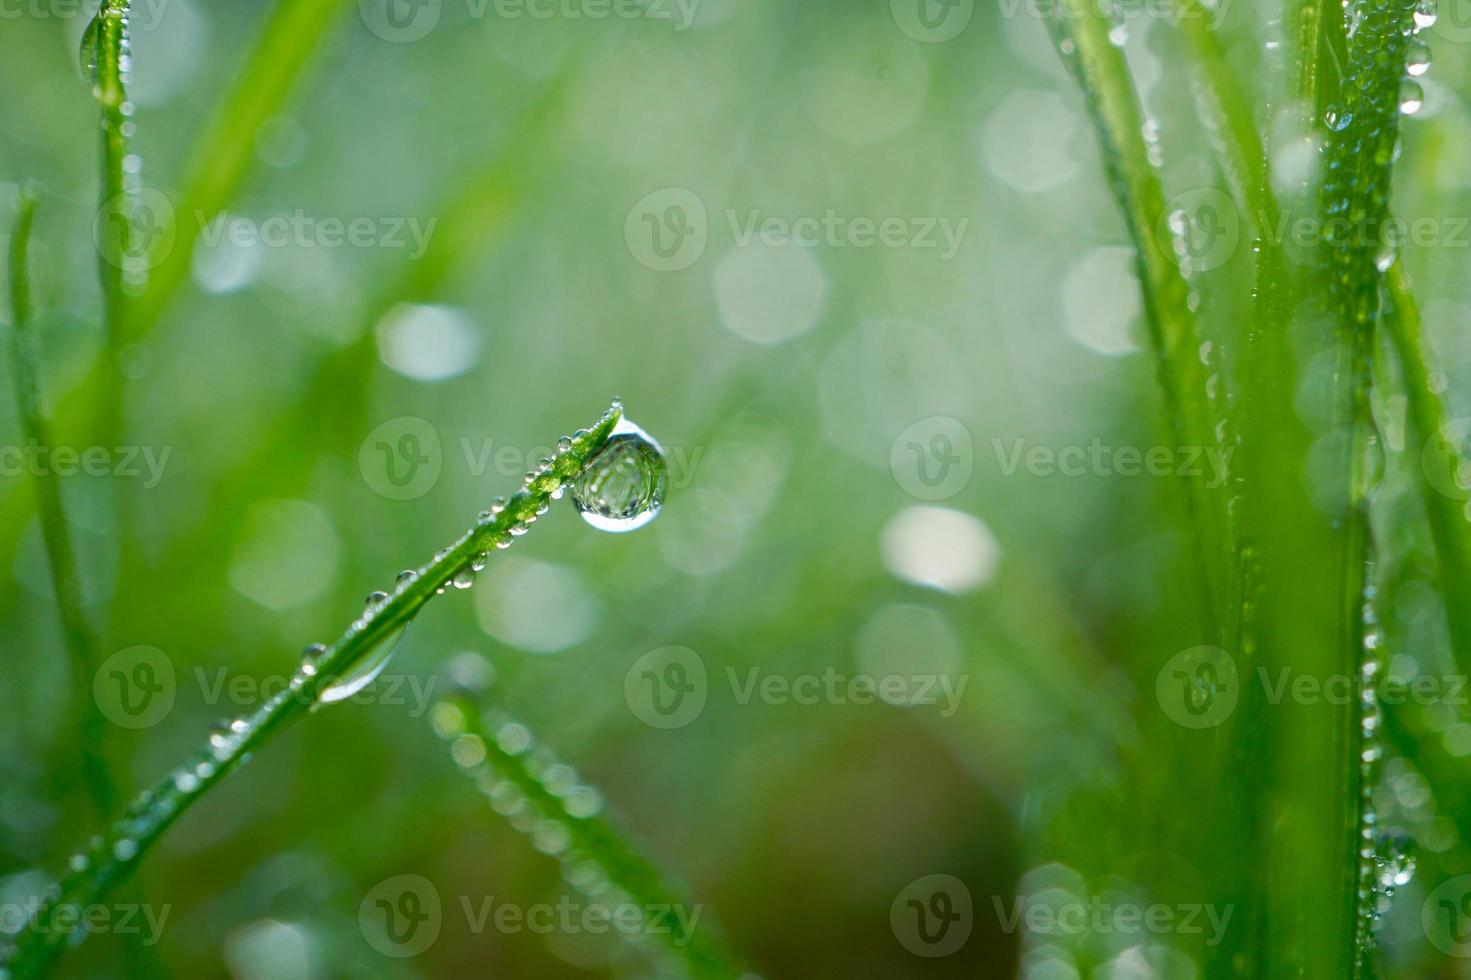 goutte de pluie sur l'herbe verte les jours de pluie photo